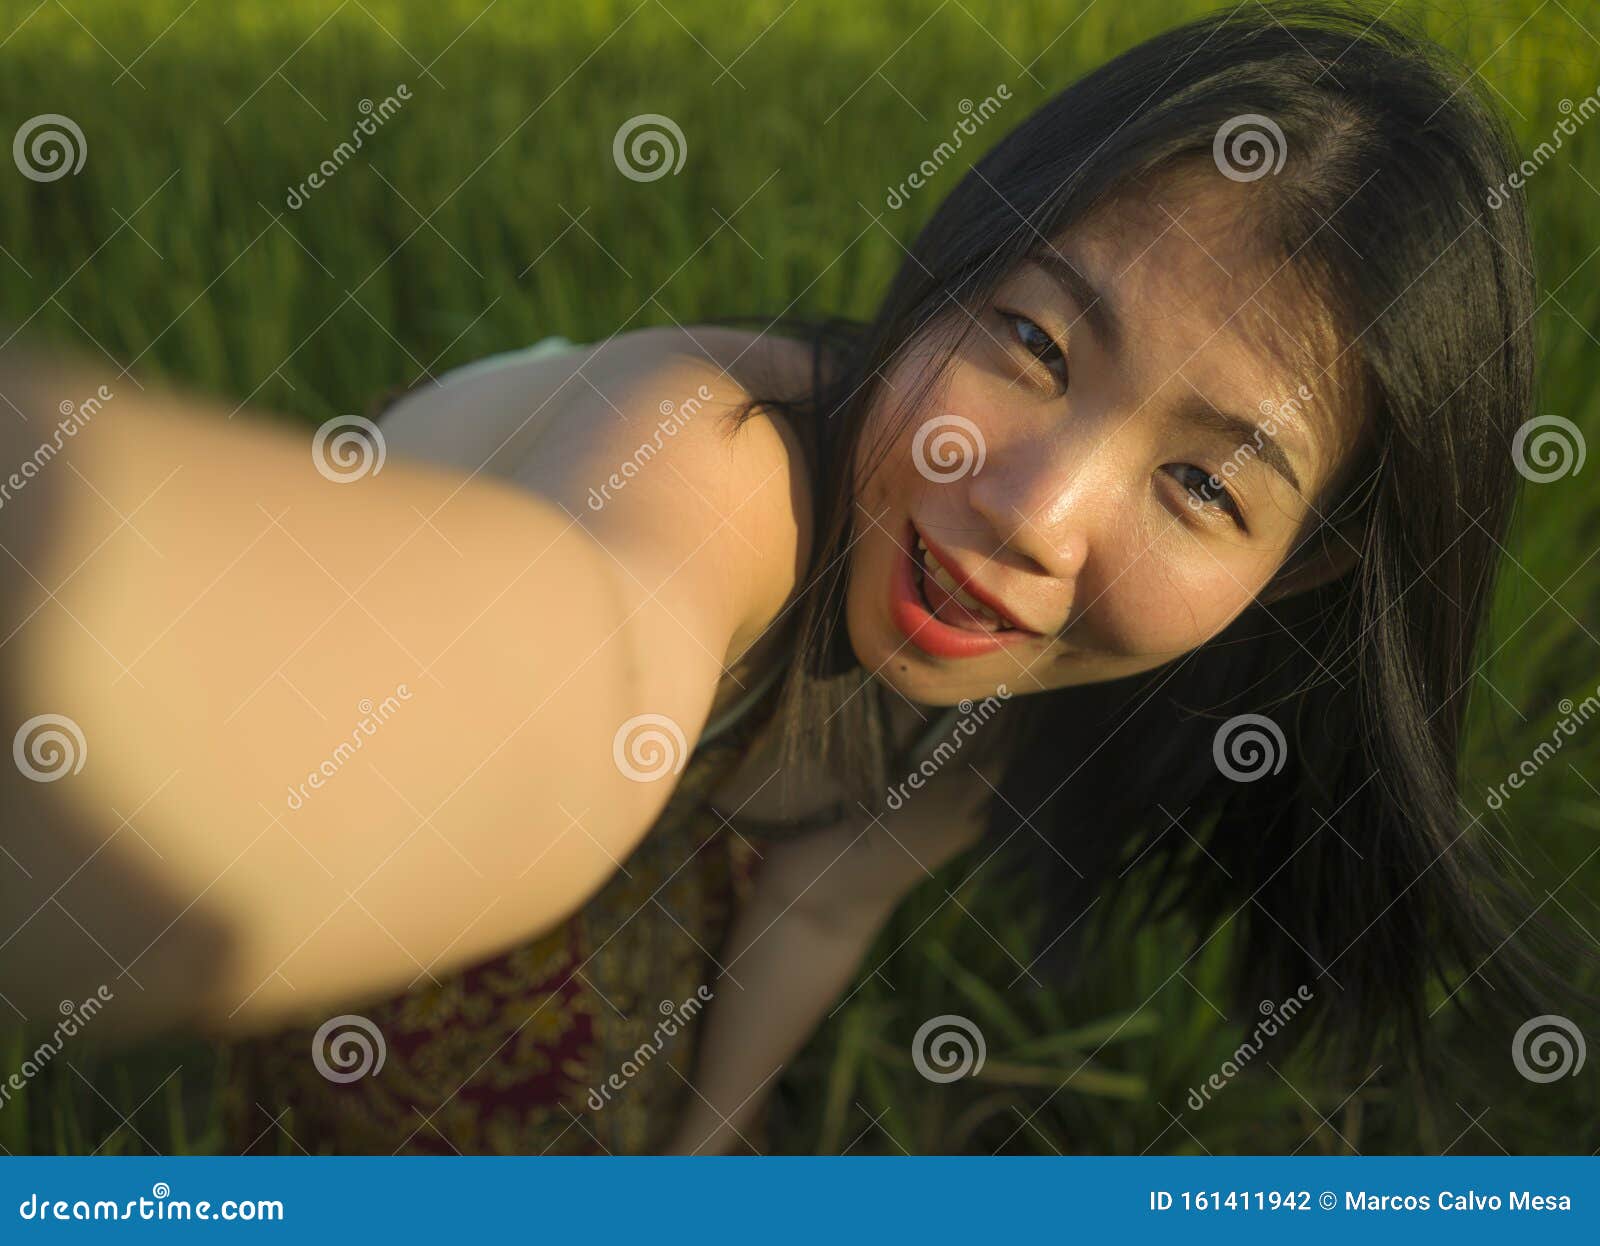 beach brunette woman selfie sex scene